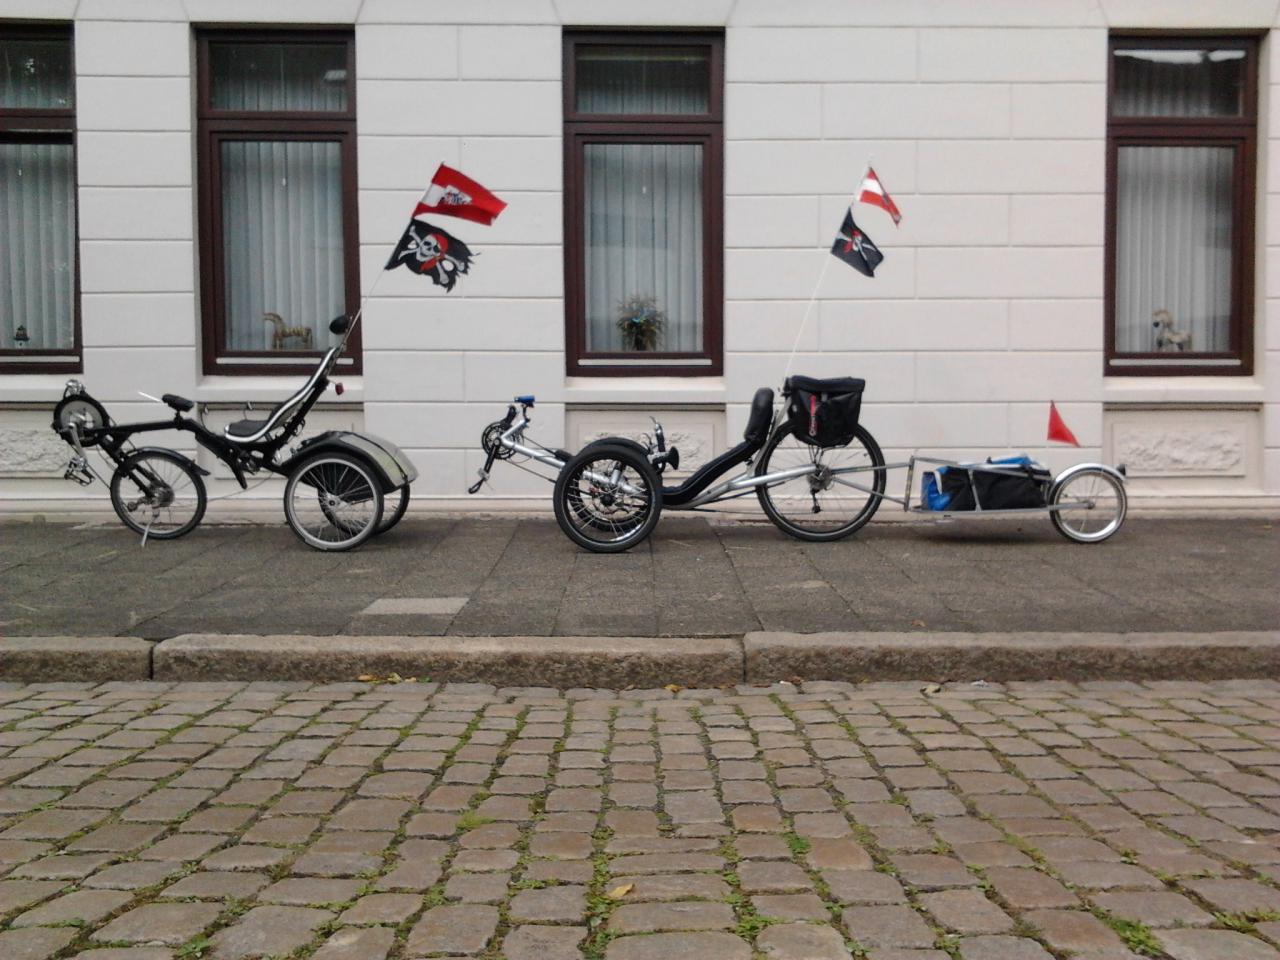 2013 09 23 15.05.47

Flevo-Trike

G-Force mit Hänger